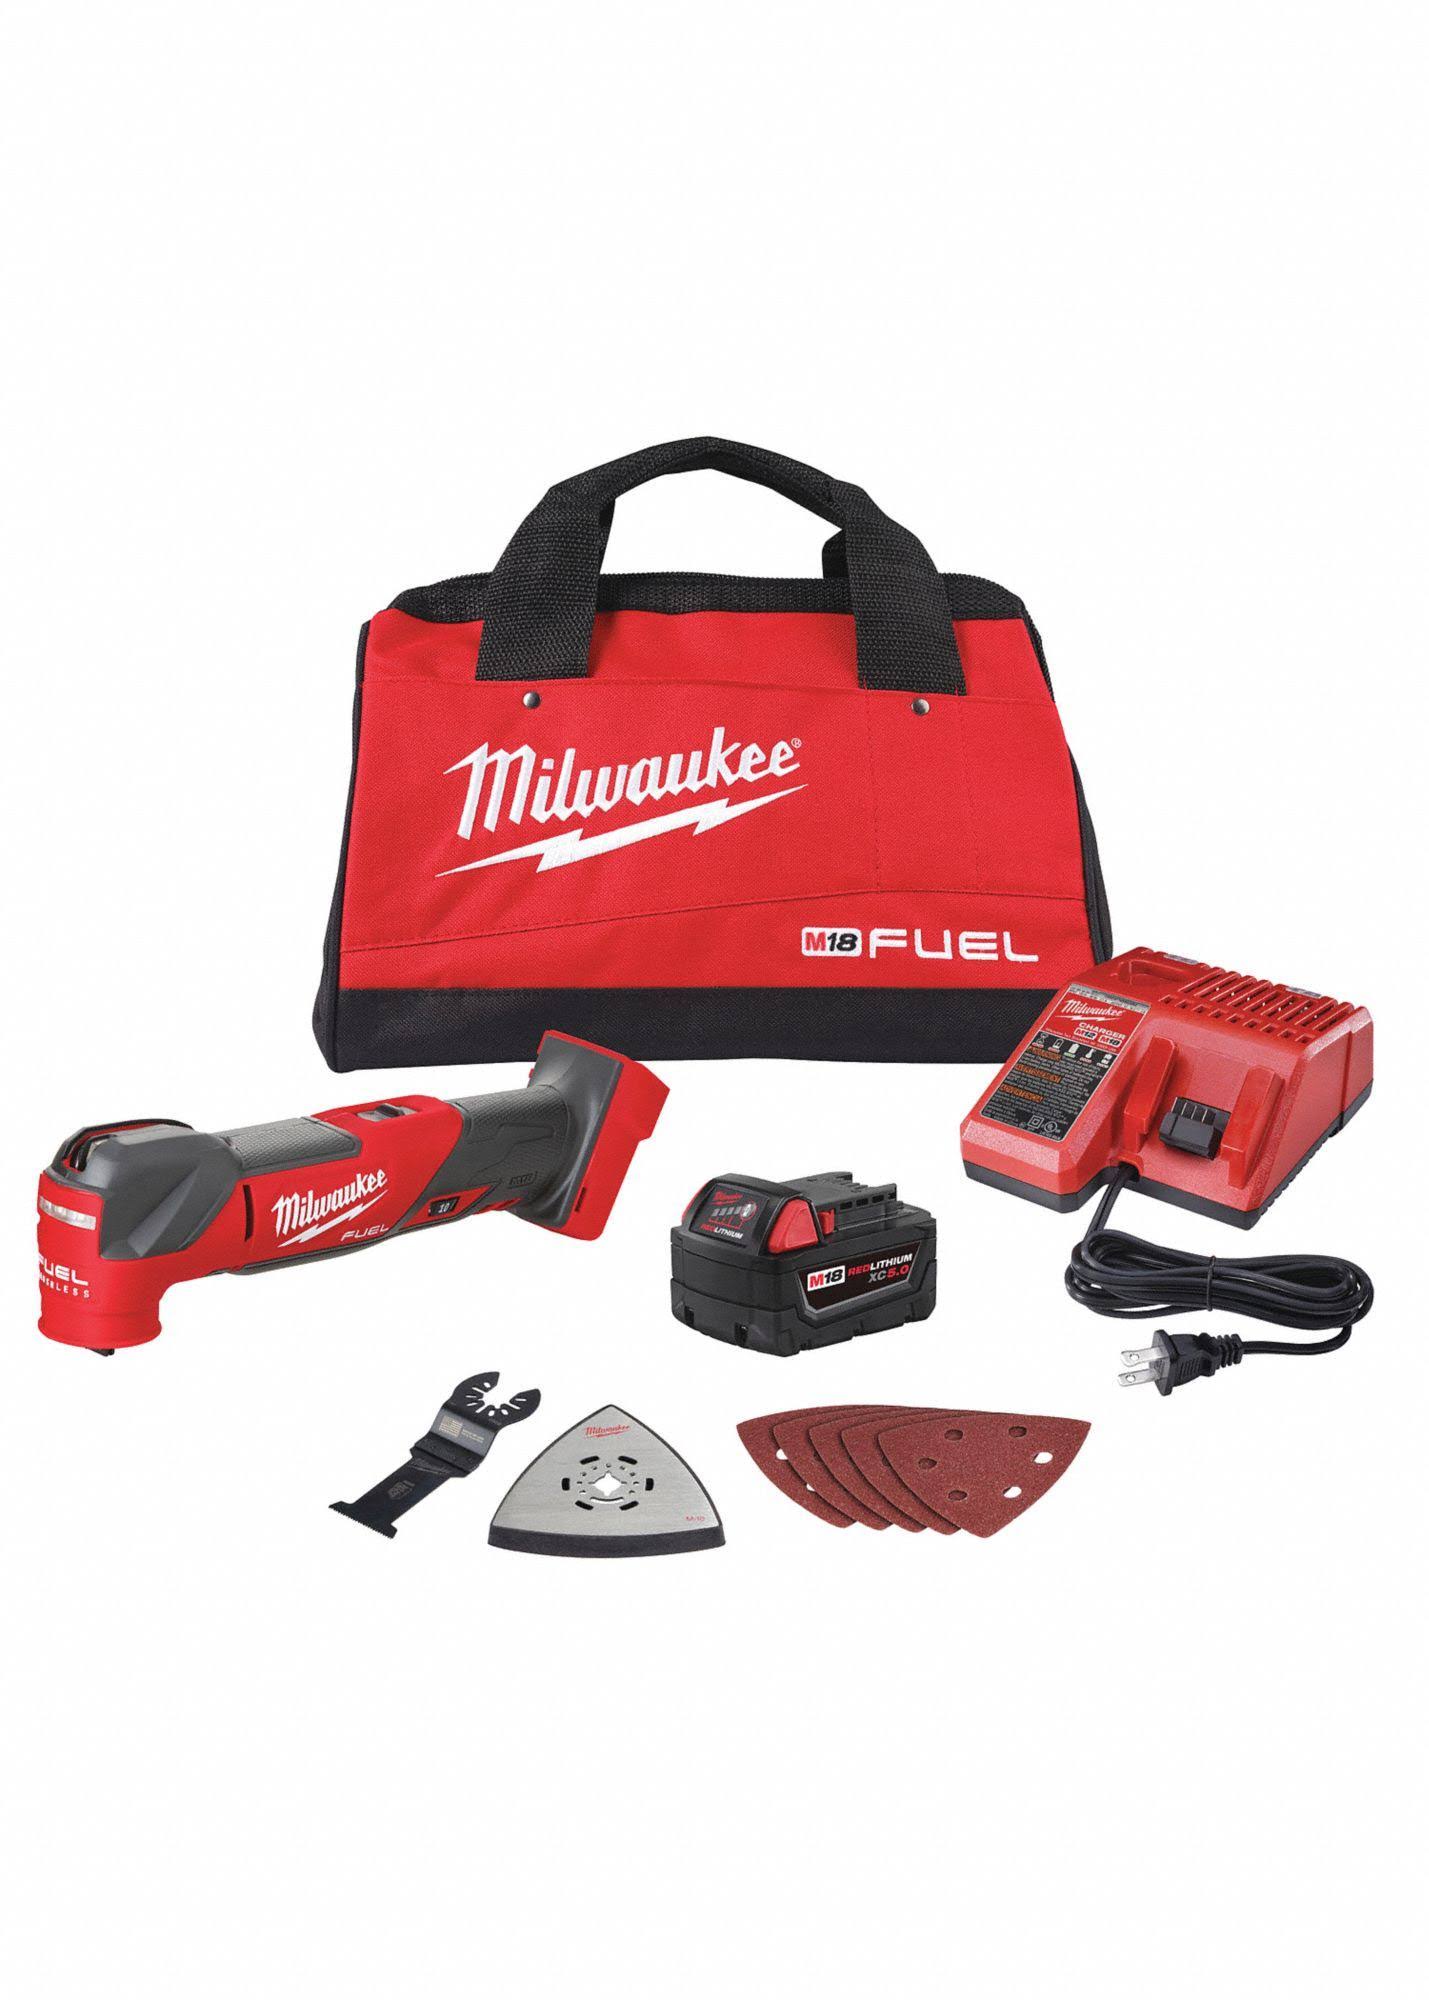 Milwaukee 2836-21 M18 Fuel Oscillating Multi Tool Kit